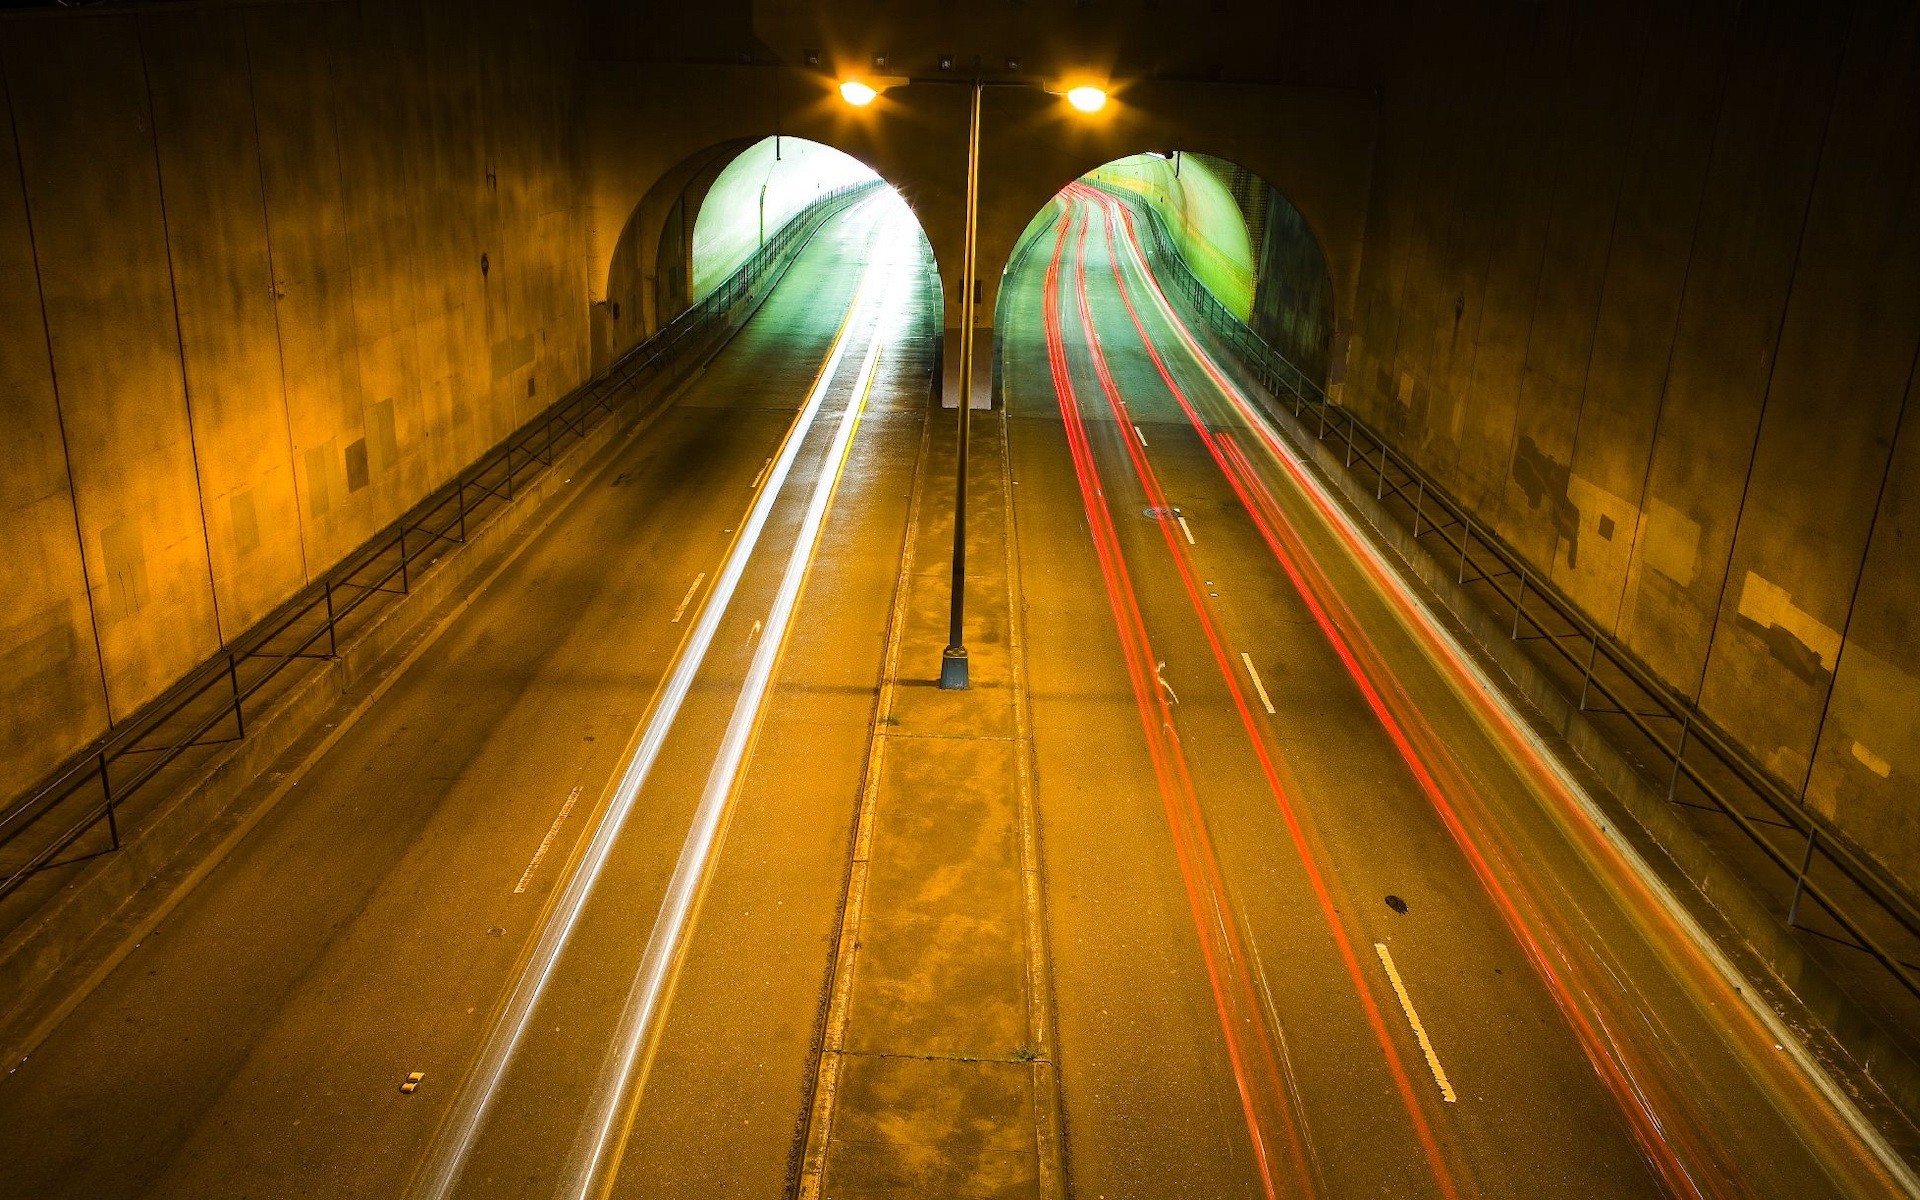 tunnels, roads - desktop wallpaper